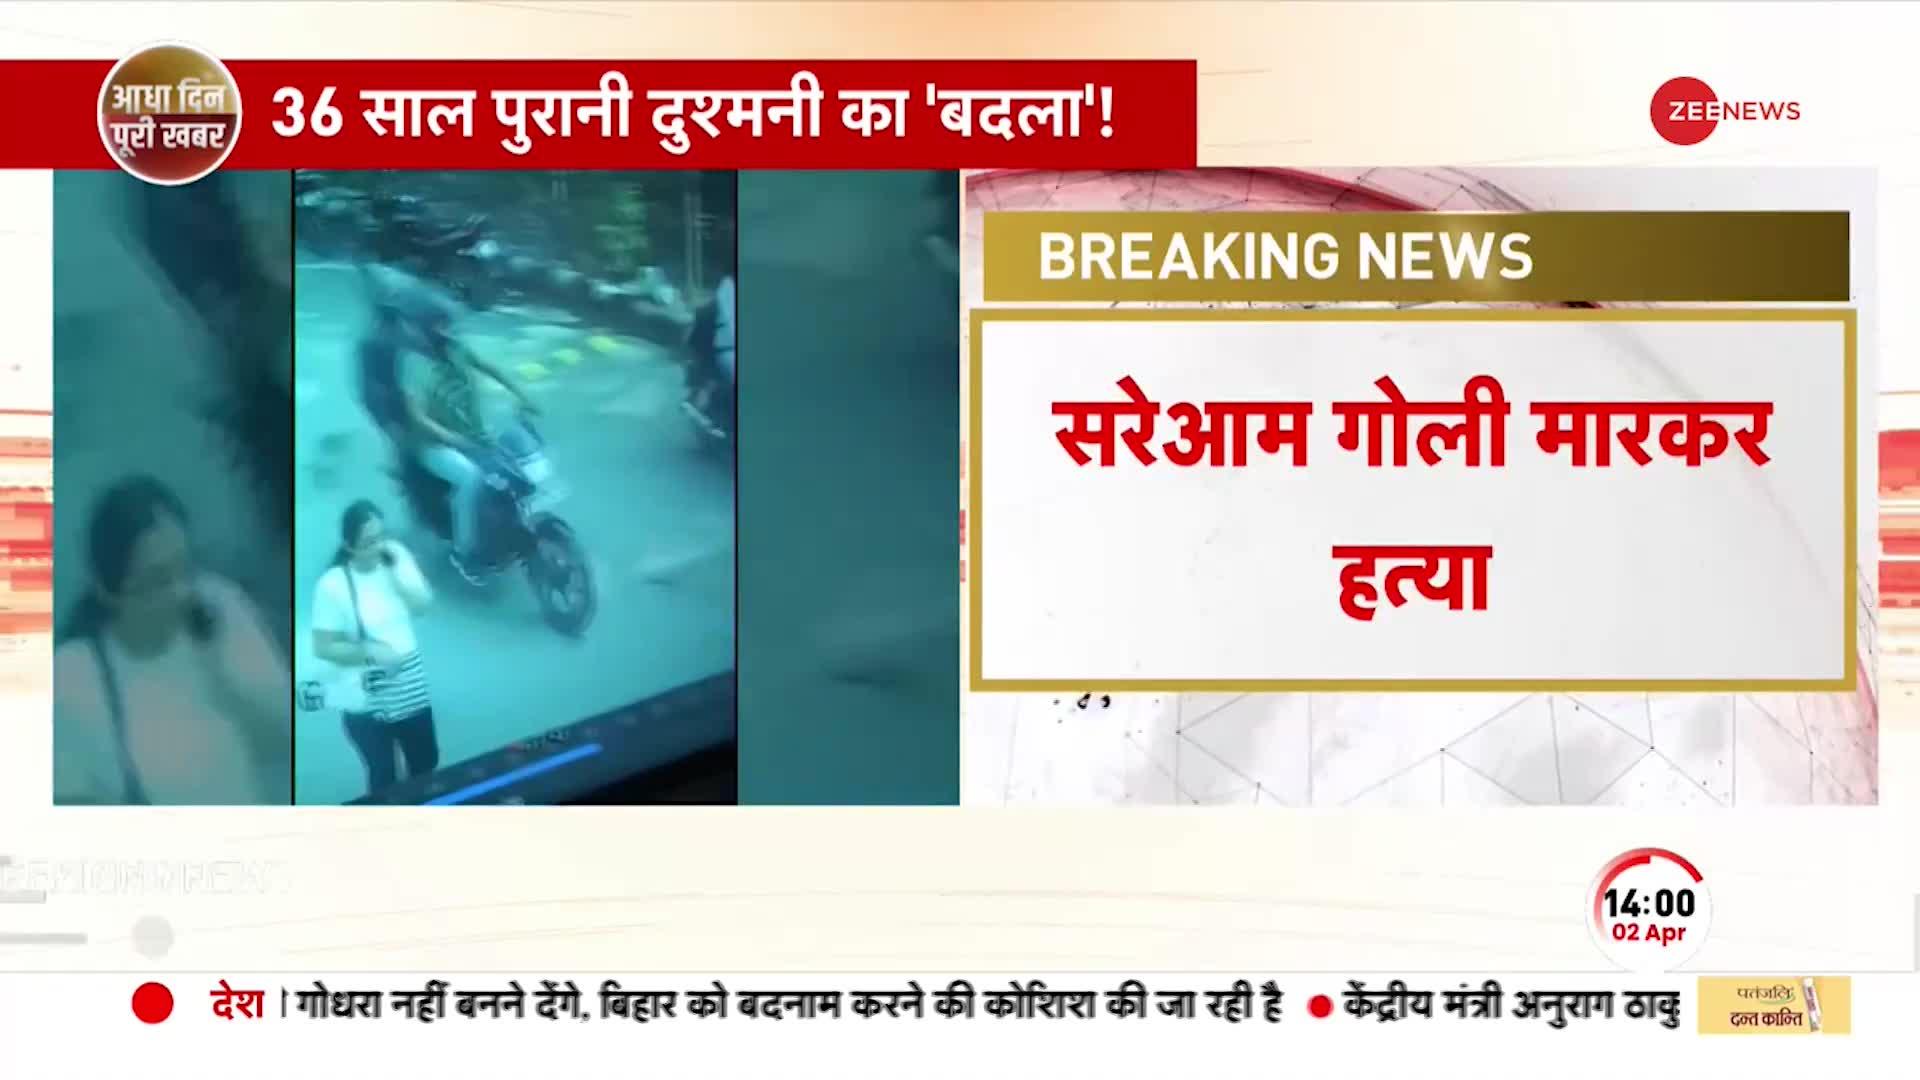 Breaking: Delhi के द्वारका इलाके में वकील की हत्या, 36 साल पुरानी दुश्मनी का 'बदला'!